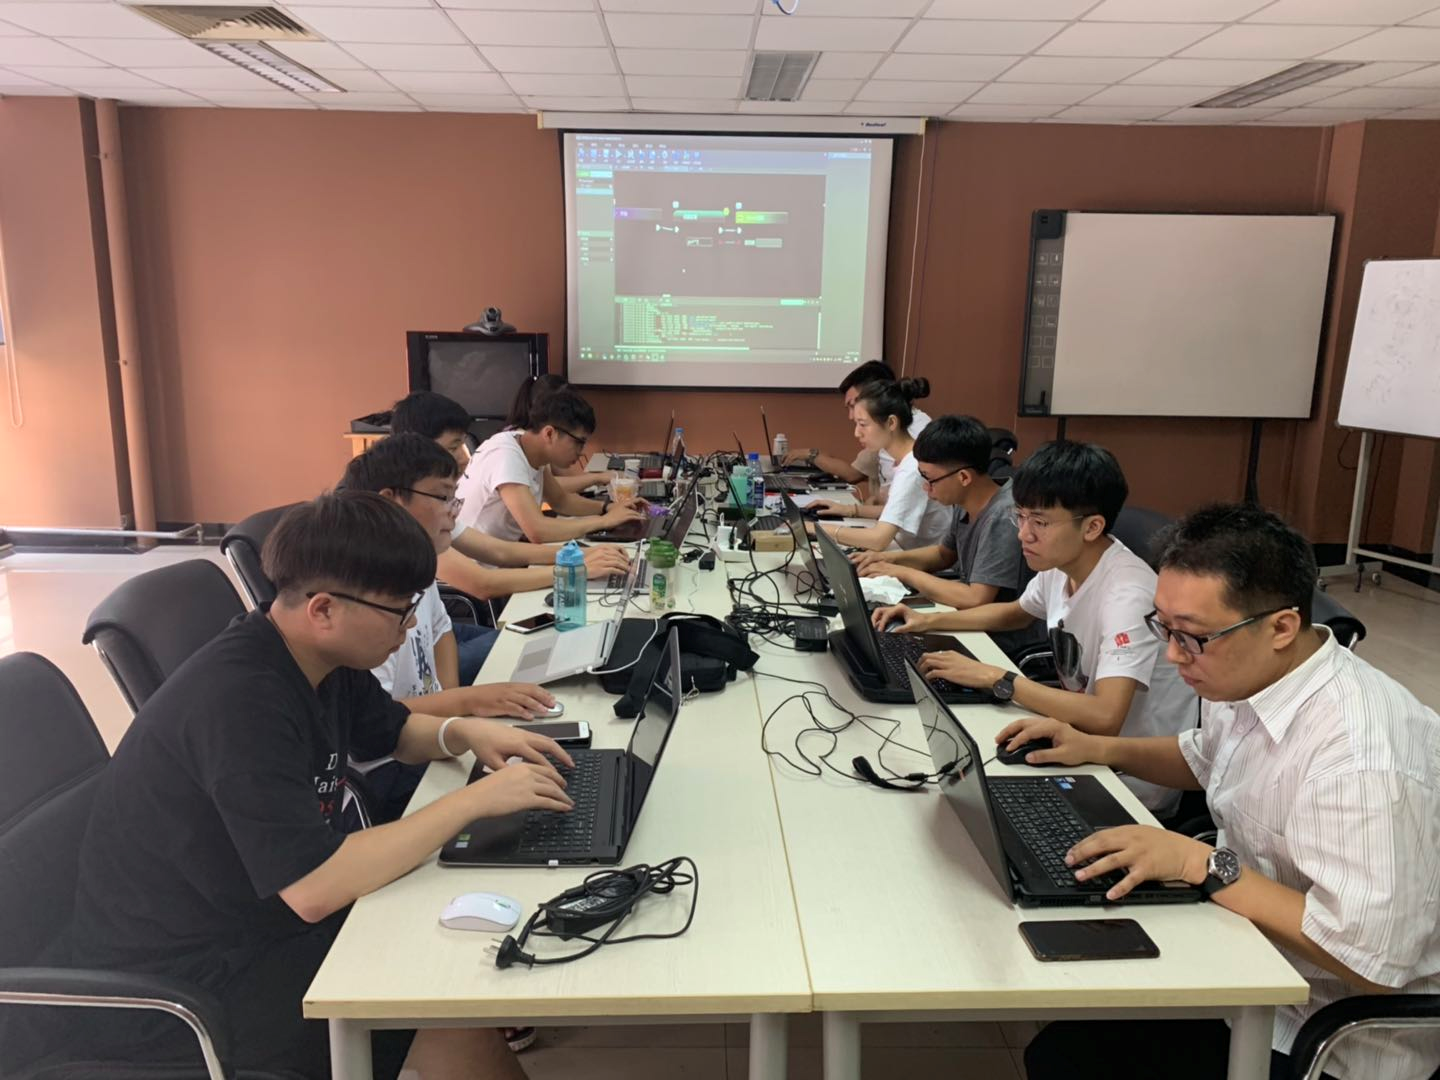 iS-RPA 技术认证培训 - 北京 20190701 班 - 培训完成